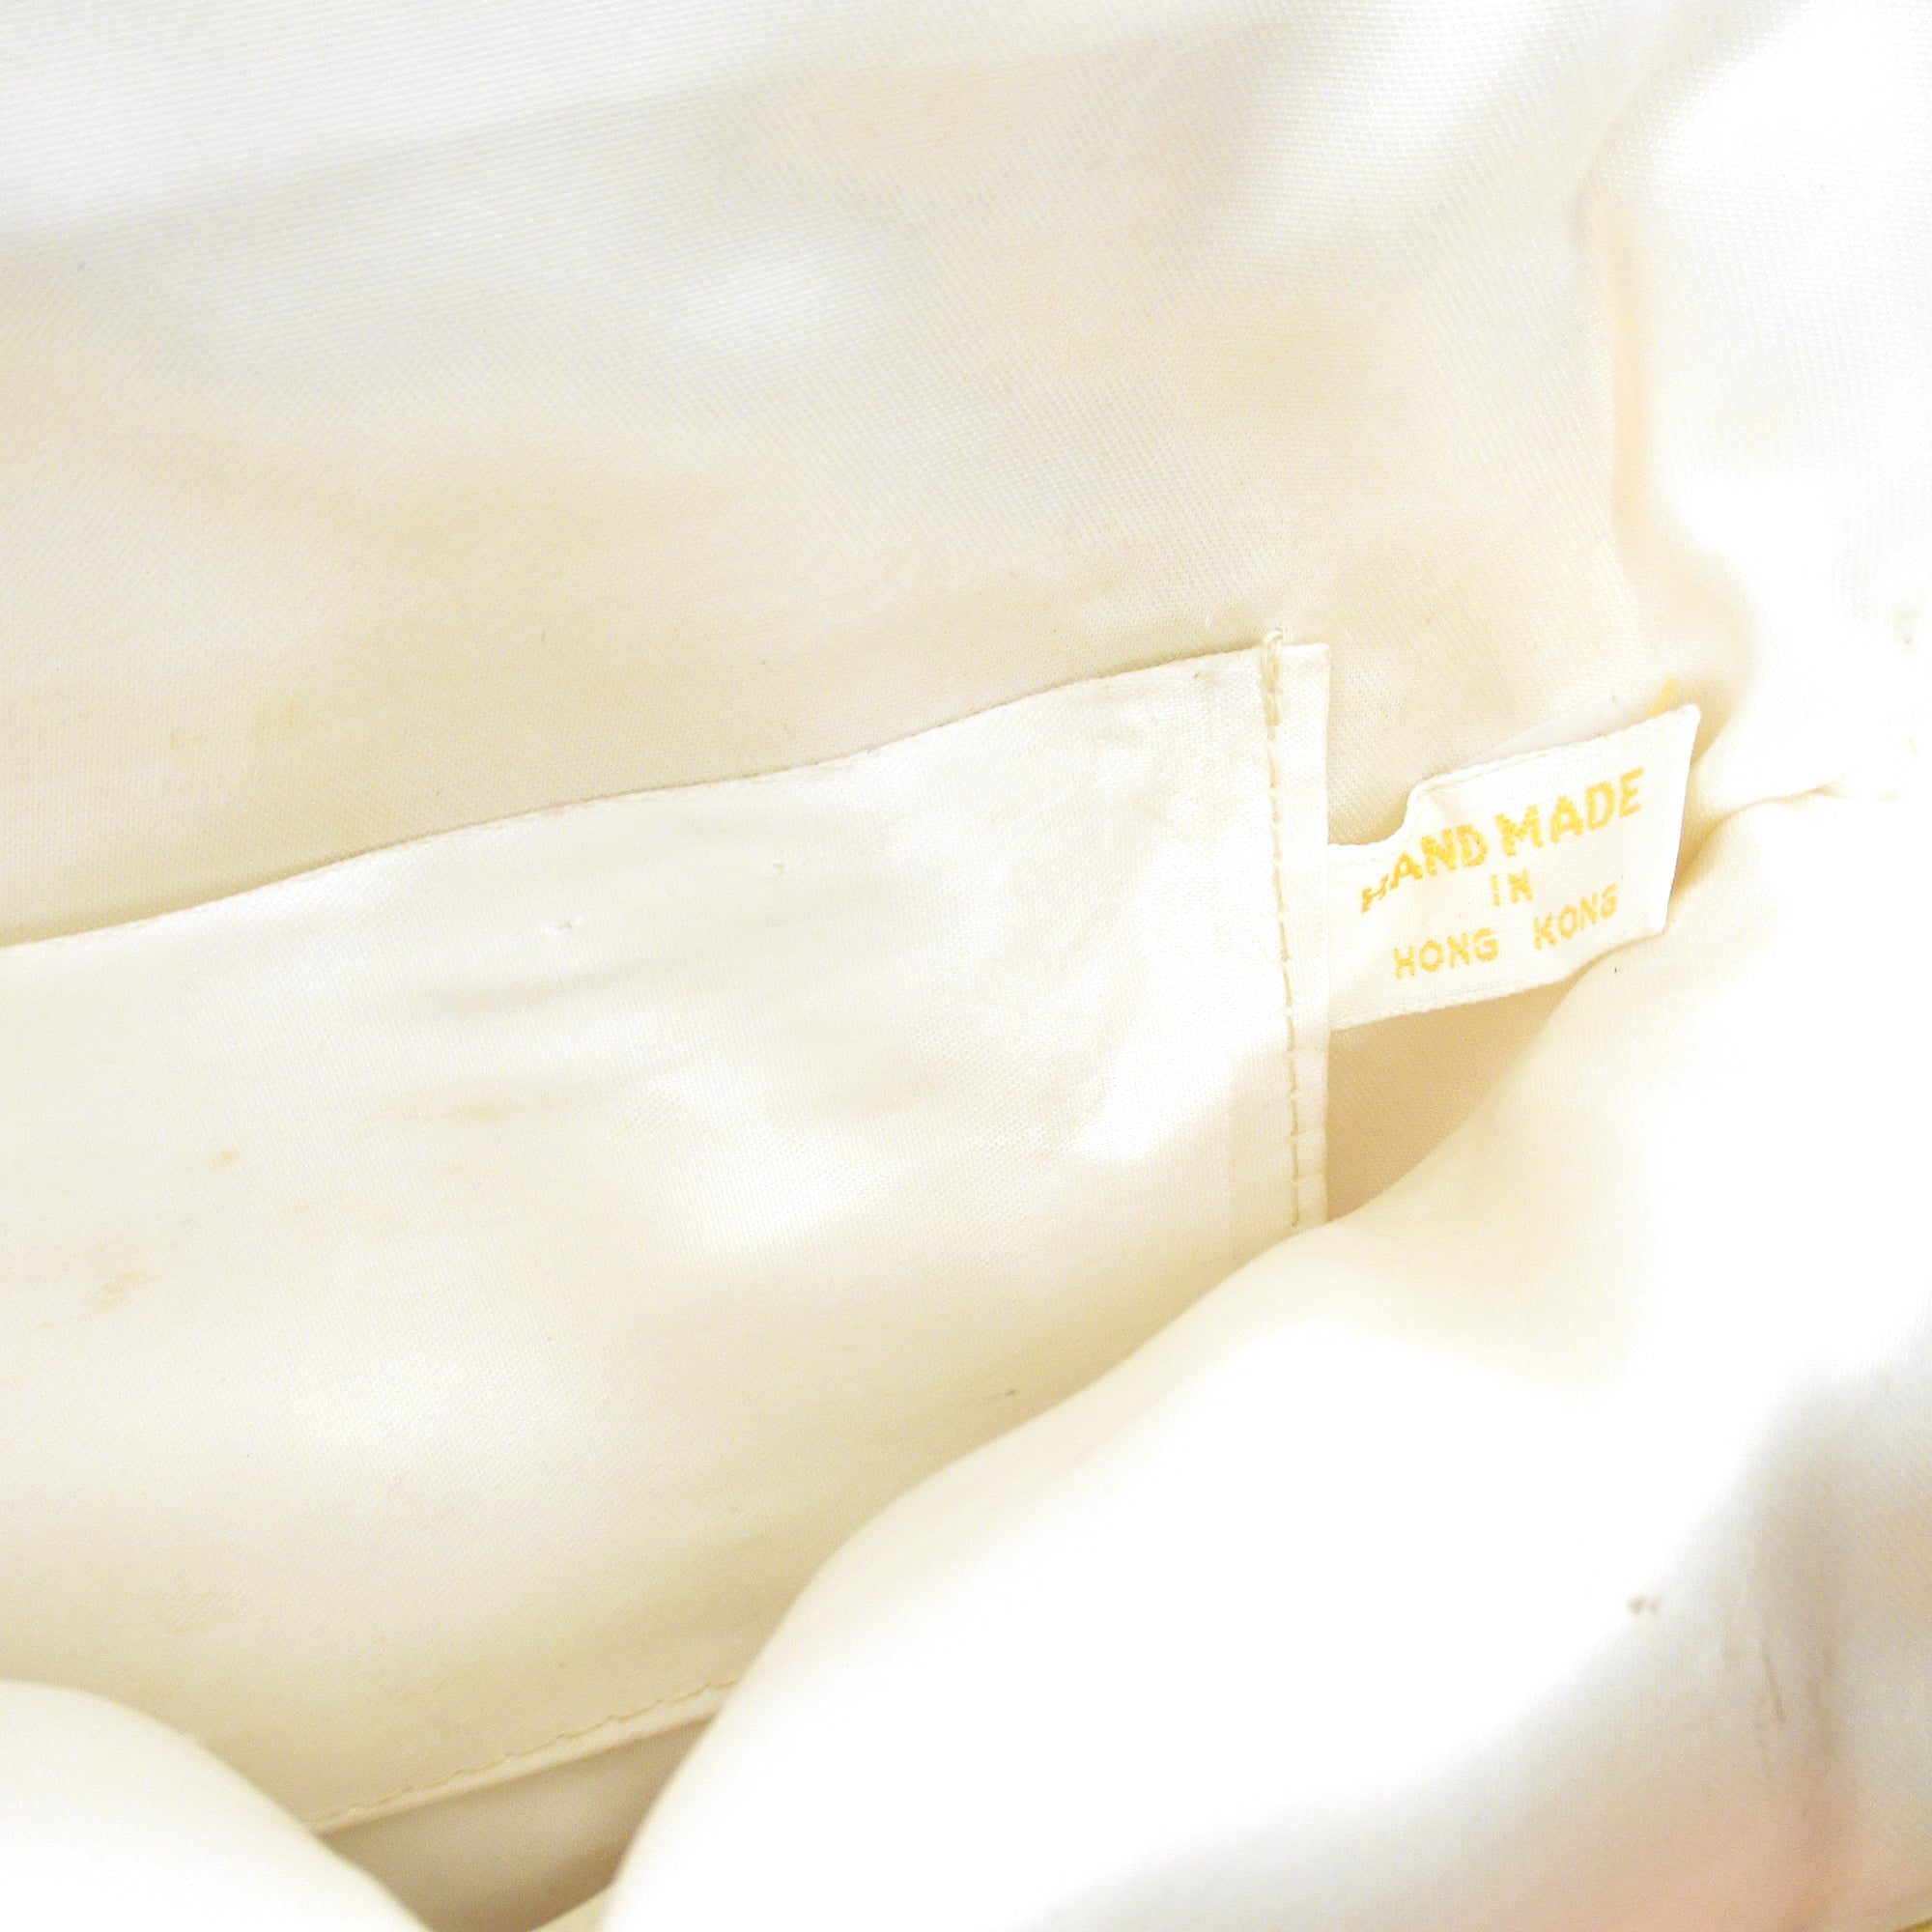 Circa 1950s Hong Kong Made Sequin Beaded White Purse